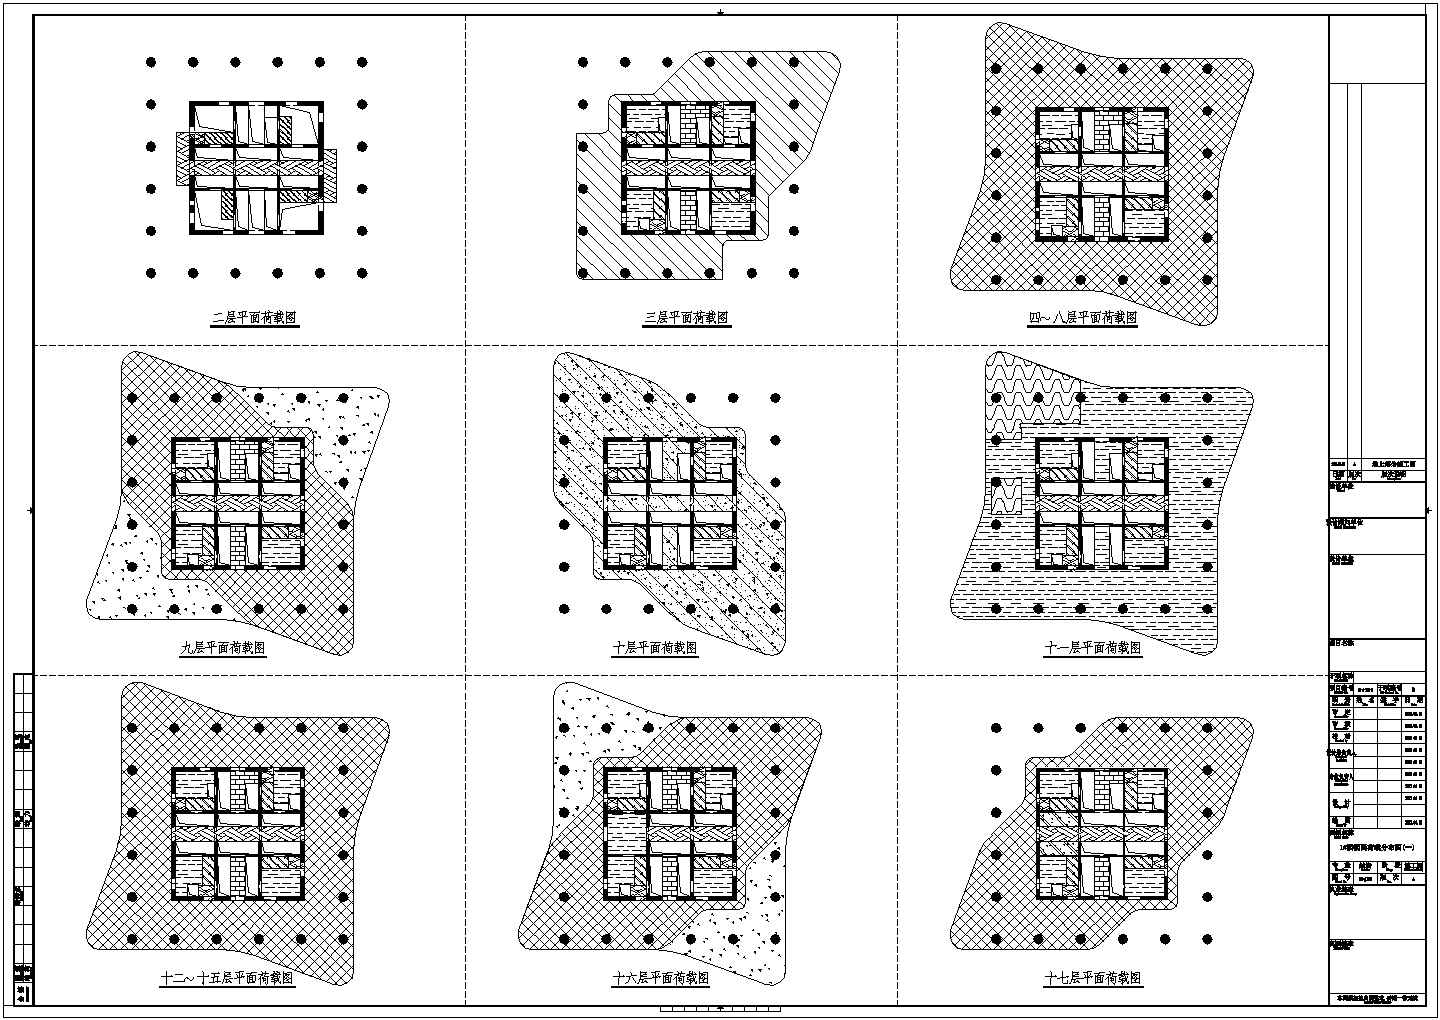 [施工图]64层框架核心筒环带桁架结构甲级写字楼结构施工图（带停机坪187张图）